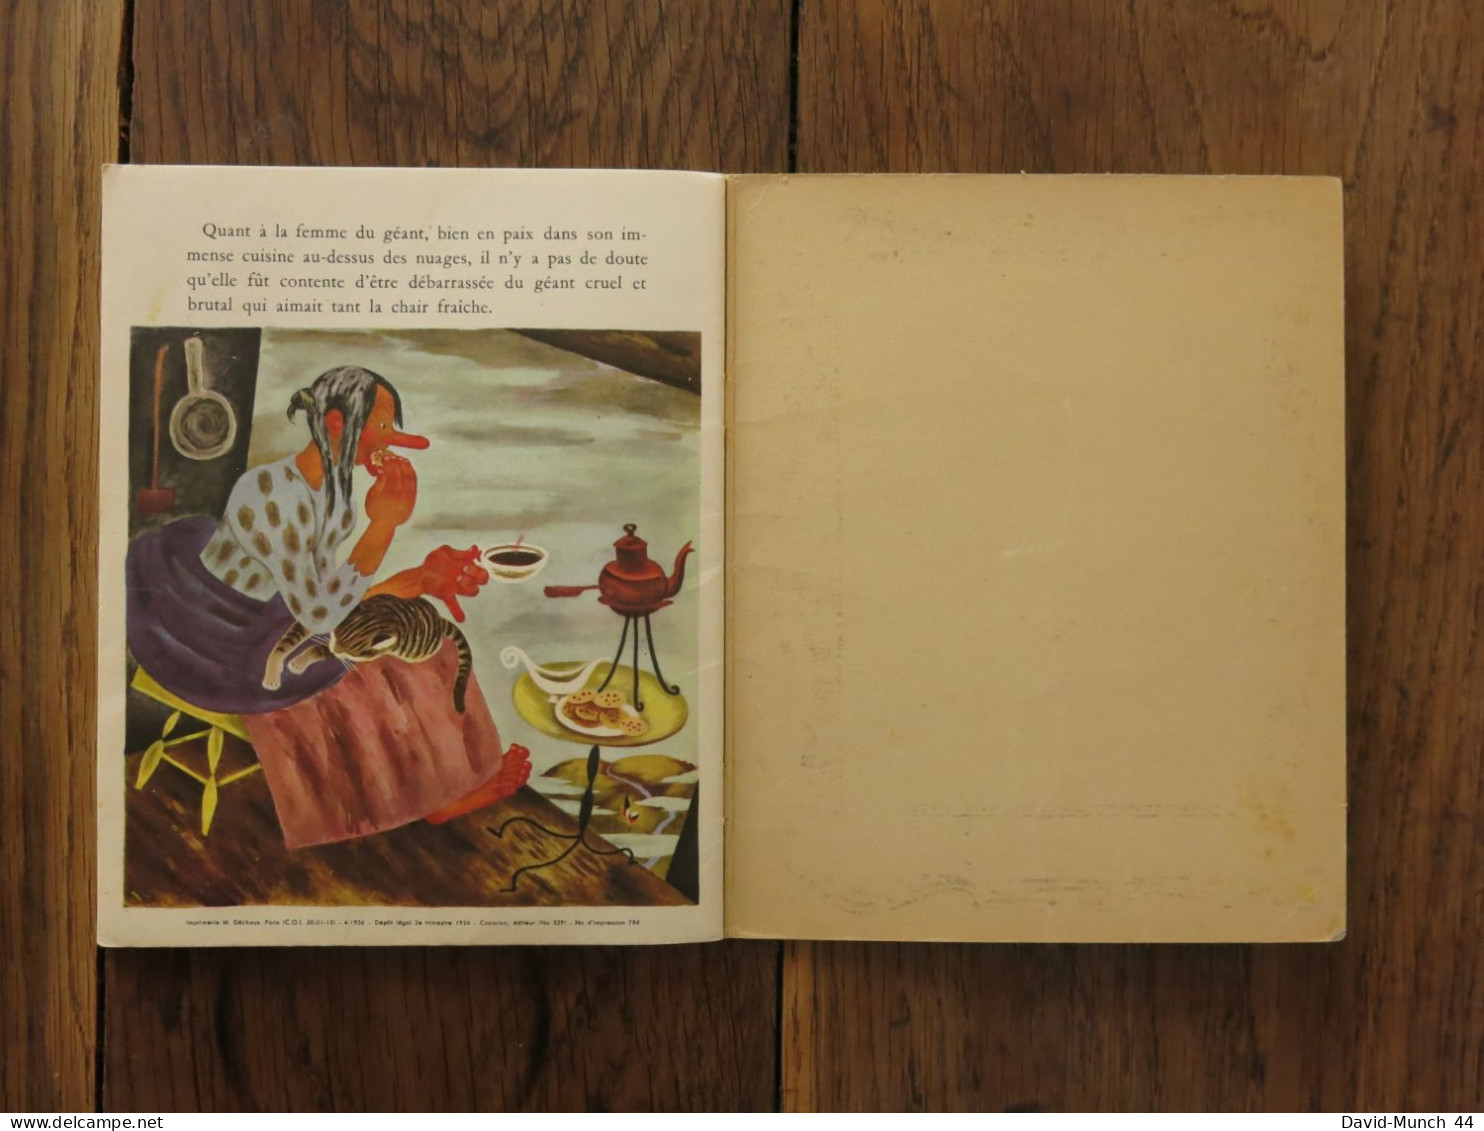 Jacques et le haricot géant illustré par Gustaf Tenggren. Les éditions Cocorico, un petit livre d'argent. 1956